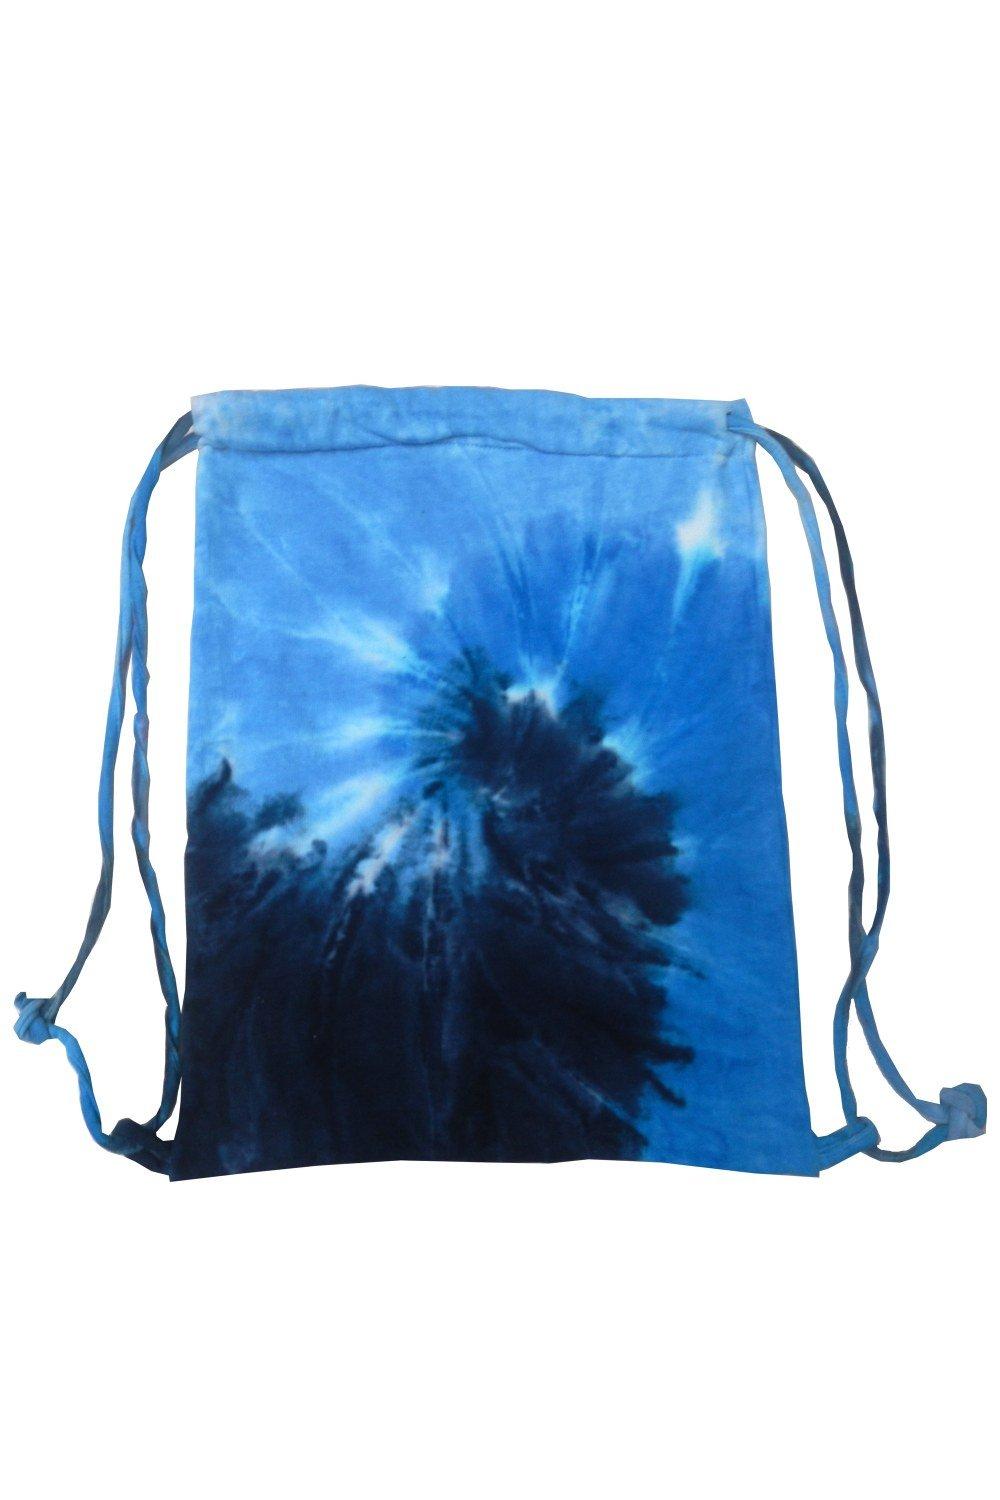 Спортивная большая сумка на шнуровке Tie Dye Colortone, синий adly легкий жесткий спиннер 20 дюймов синий ручная сумка